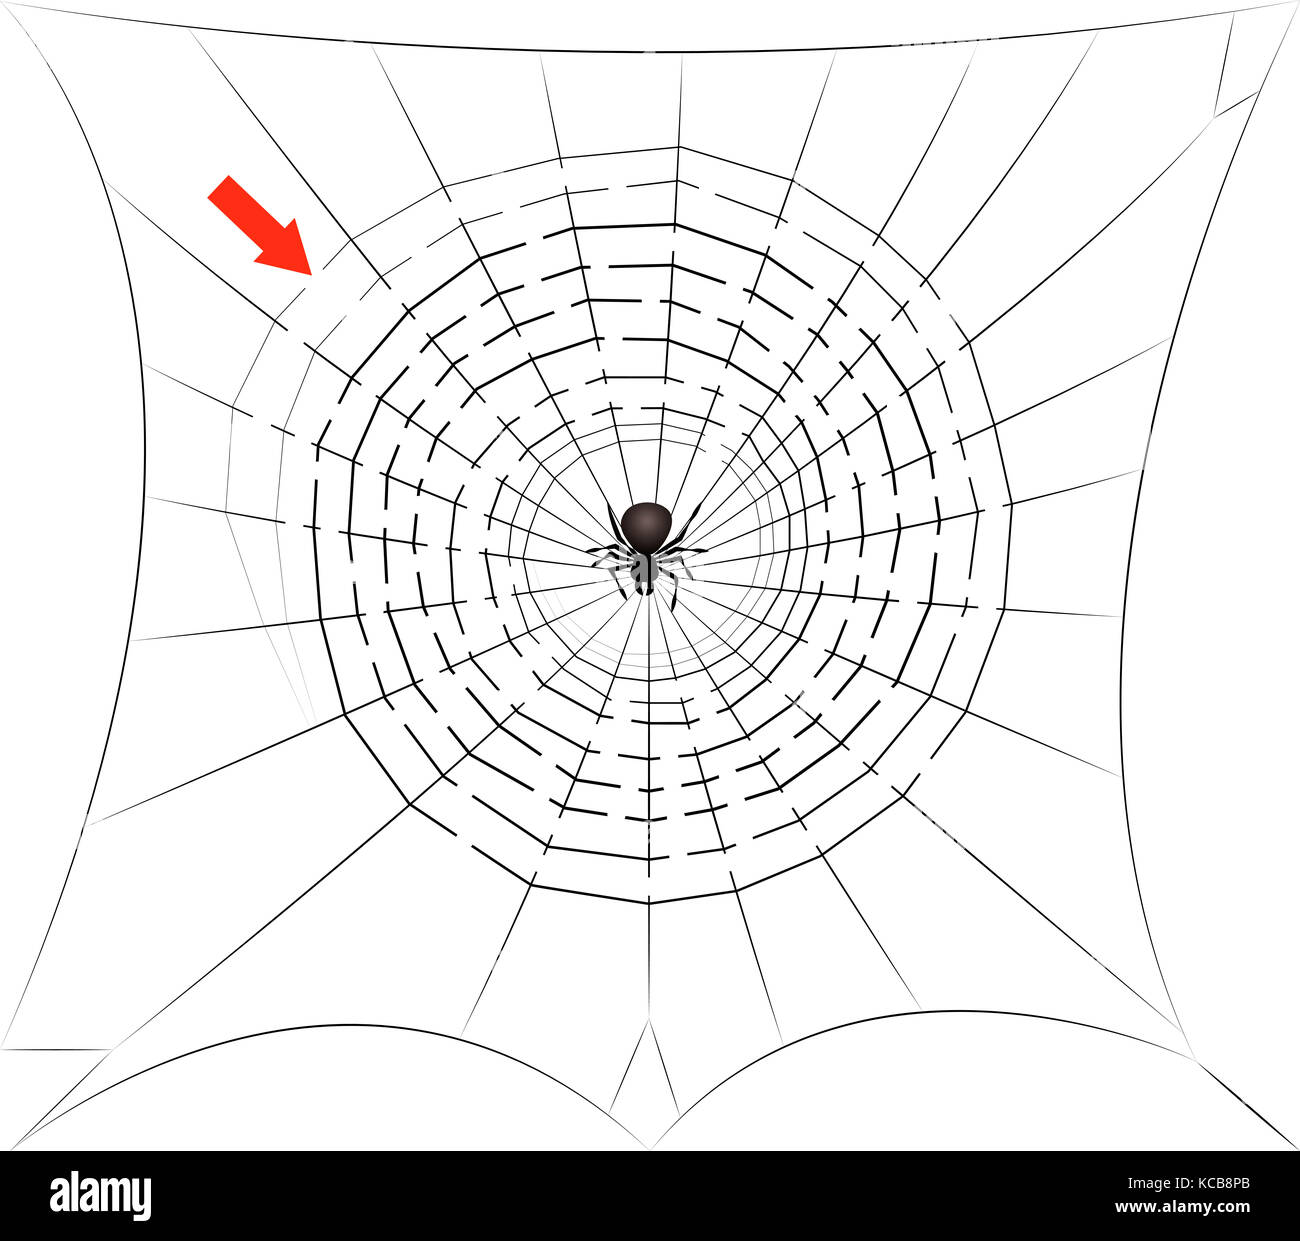 Spinnennetz Labyrinth - der Weg durch das Spinnennetz Labyrinth in die Mitte, wo die Spinne auf Sie wartet - Halloween Spaß Spiel finden. Stockfoto